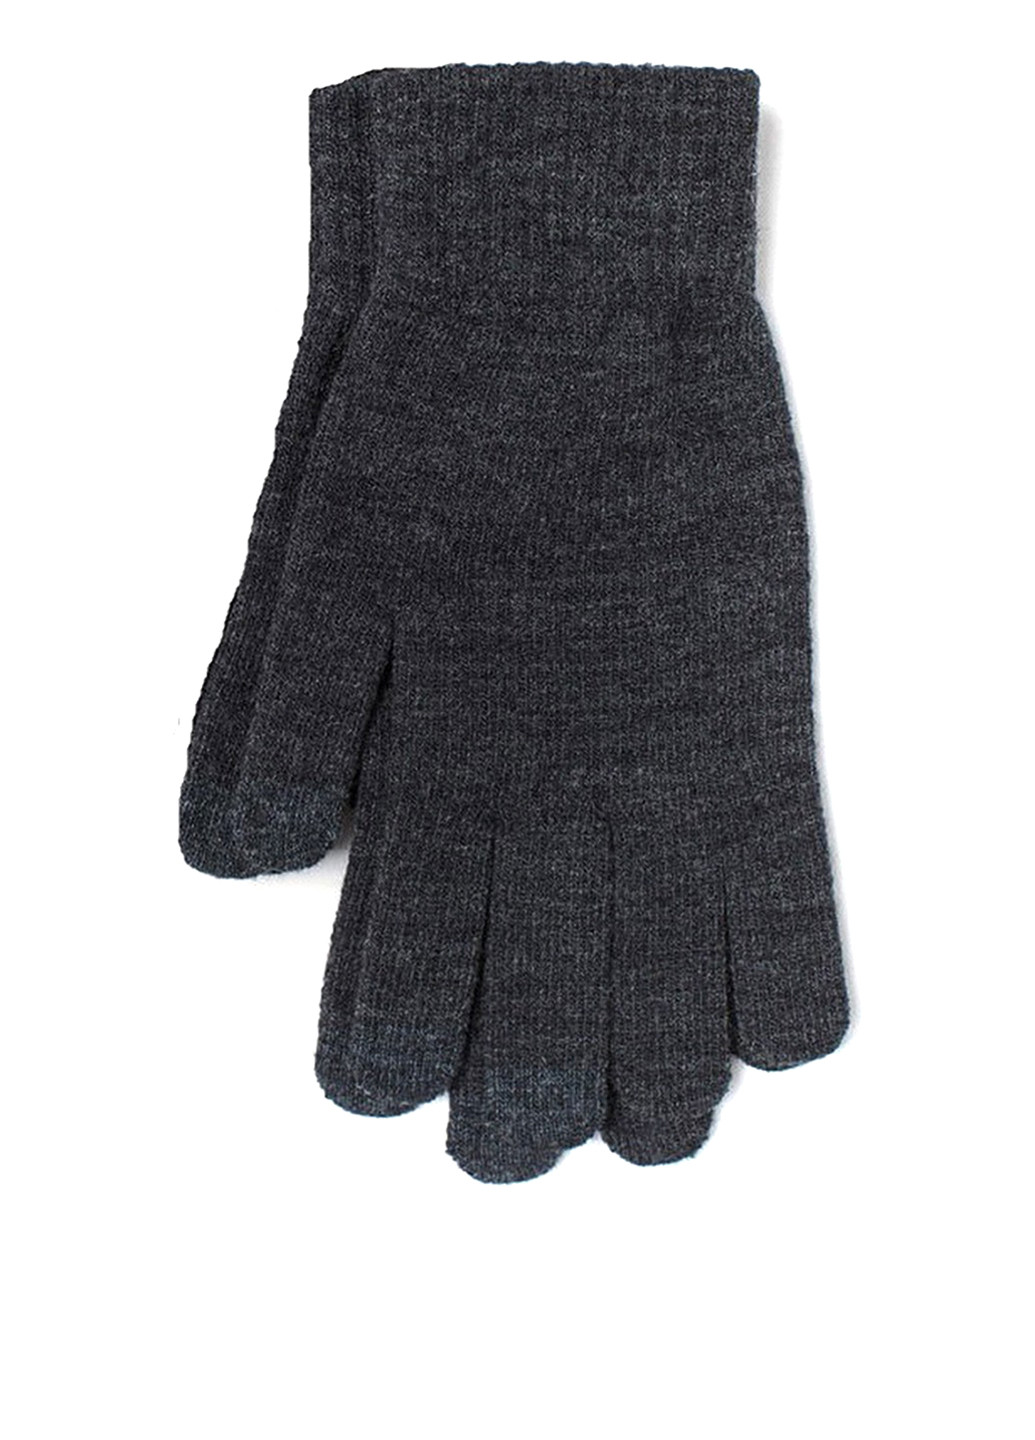 Перчатки H&M меланжи тёмно-серые кэжуалы акрил